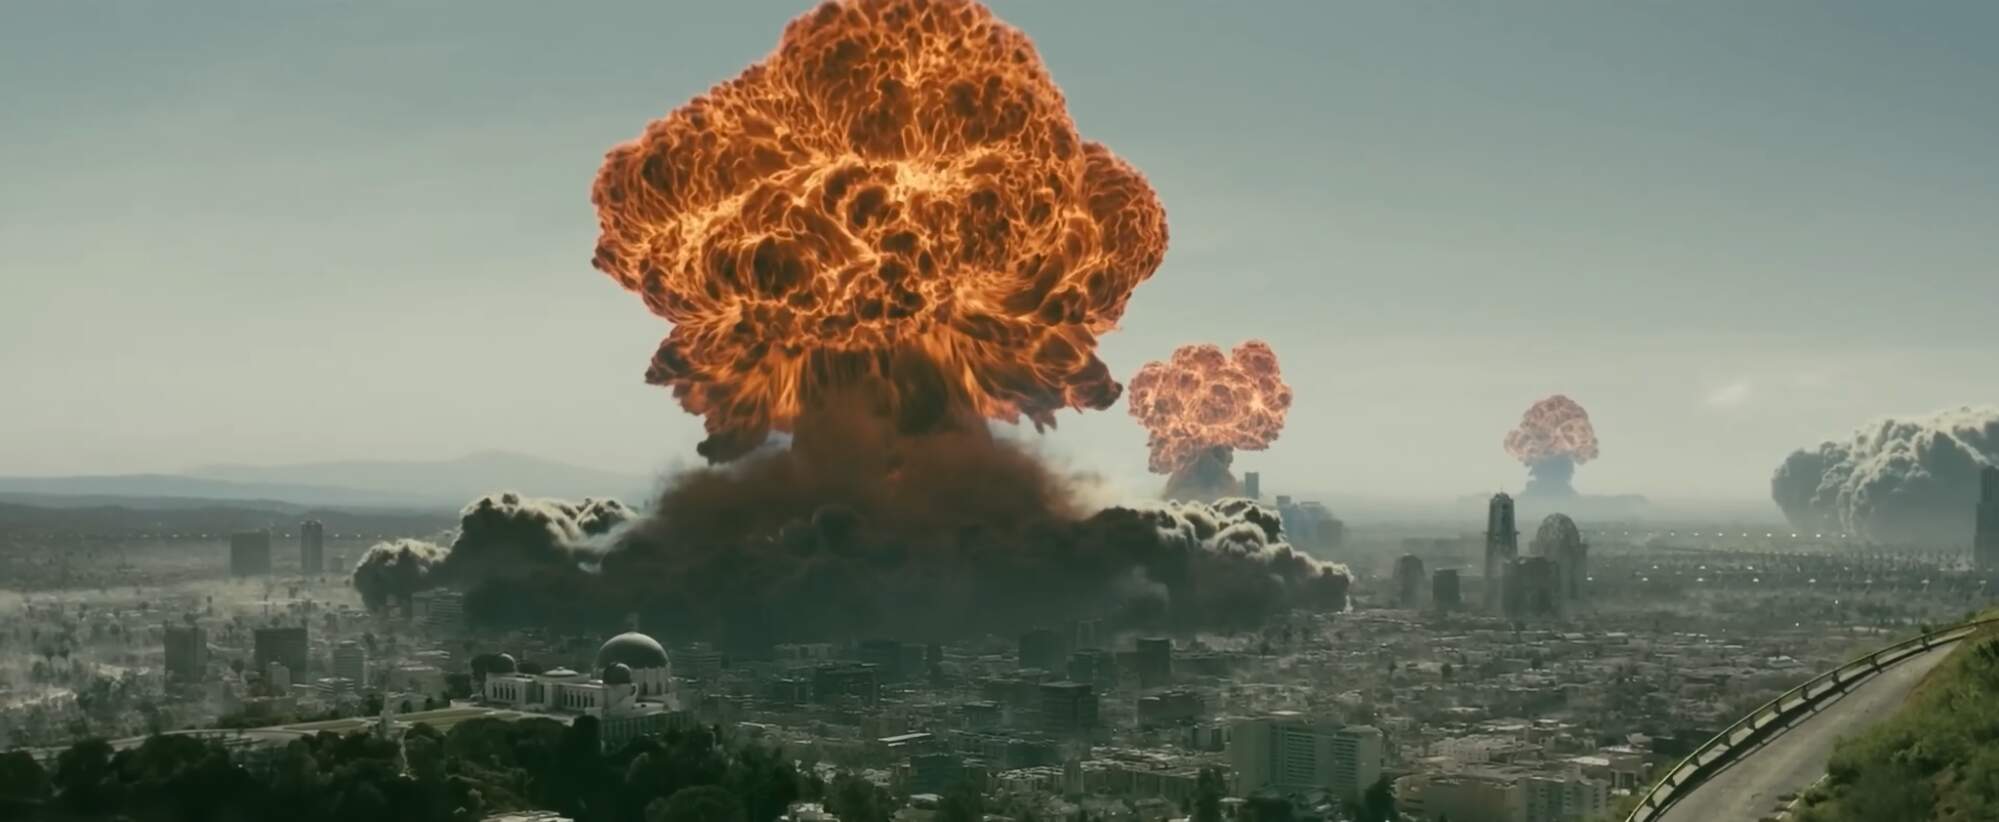 10 интересных фактов о Фоллауте (Fallout) — кто начал ядерную войну во вселенной Фоллаут?